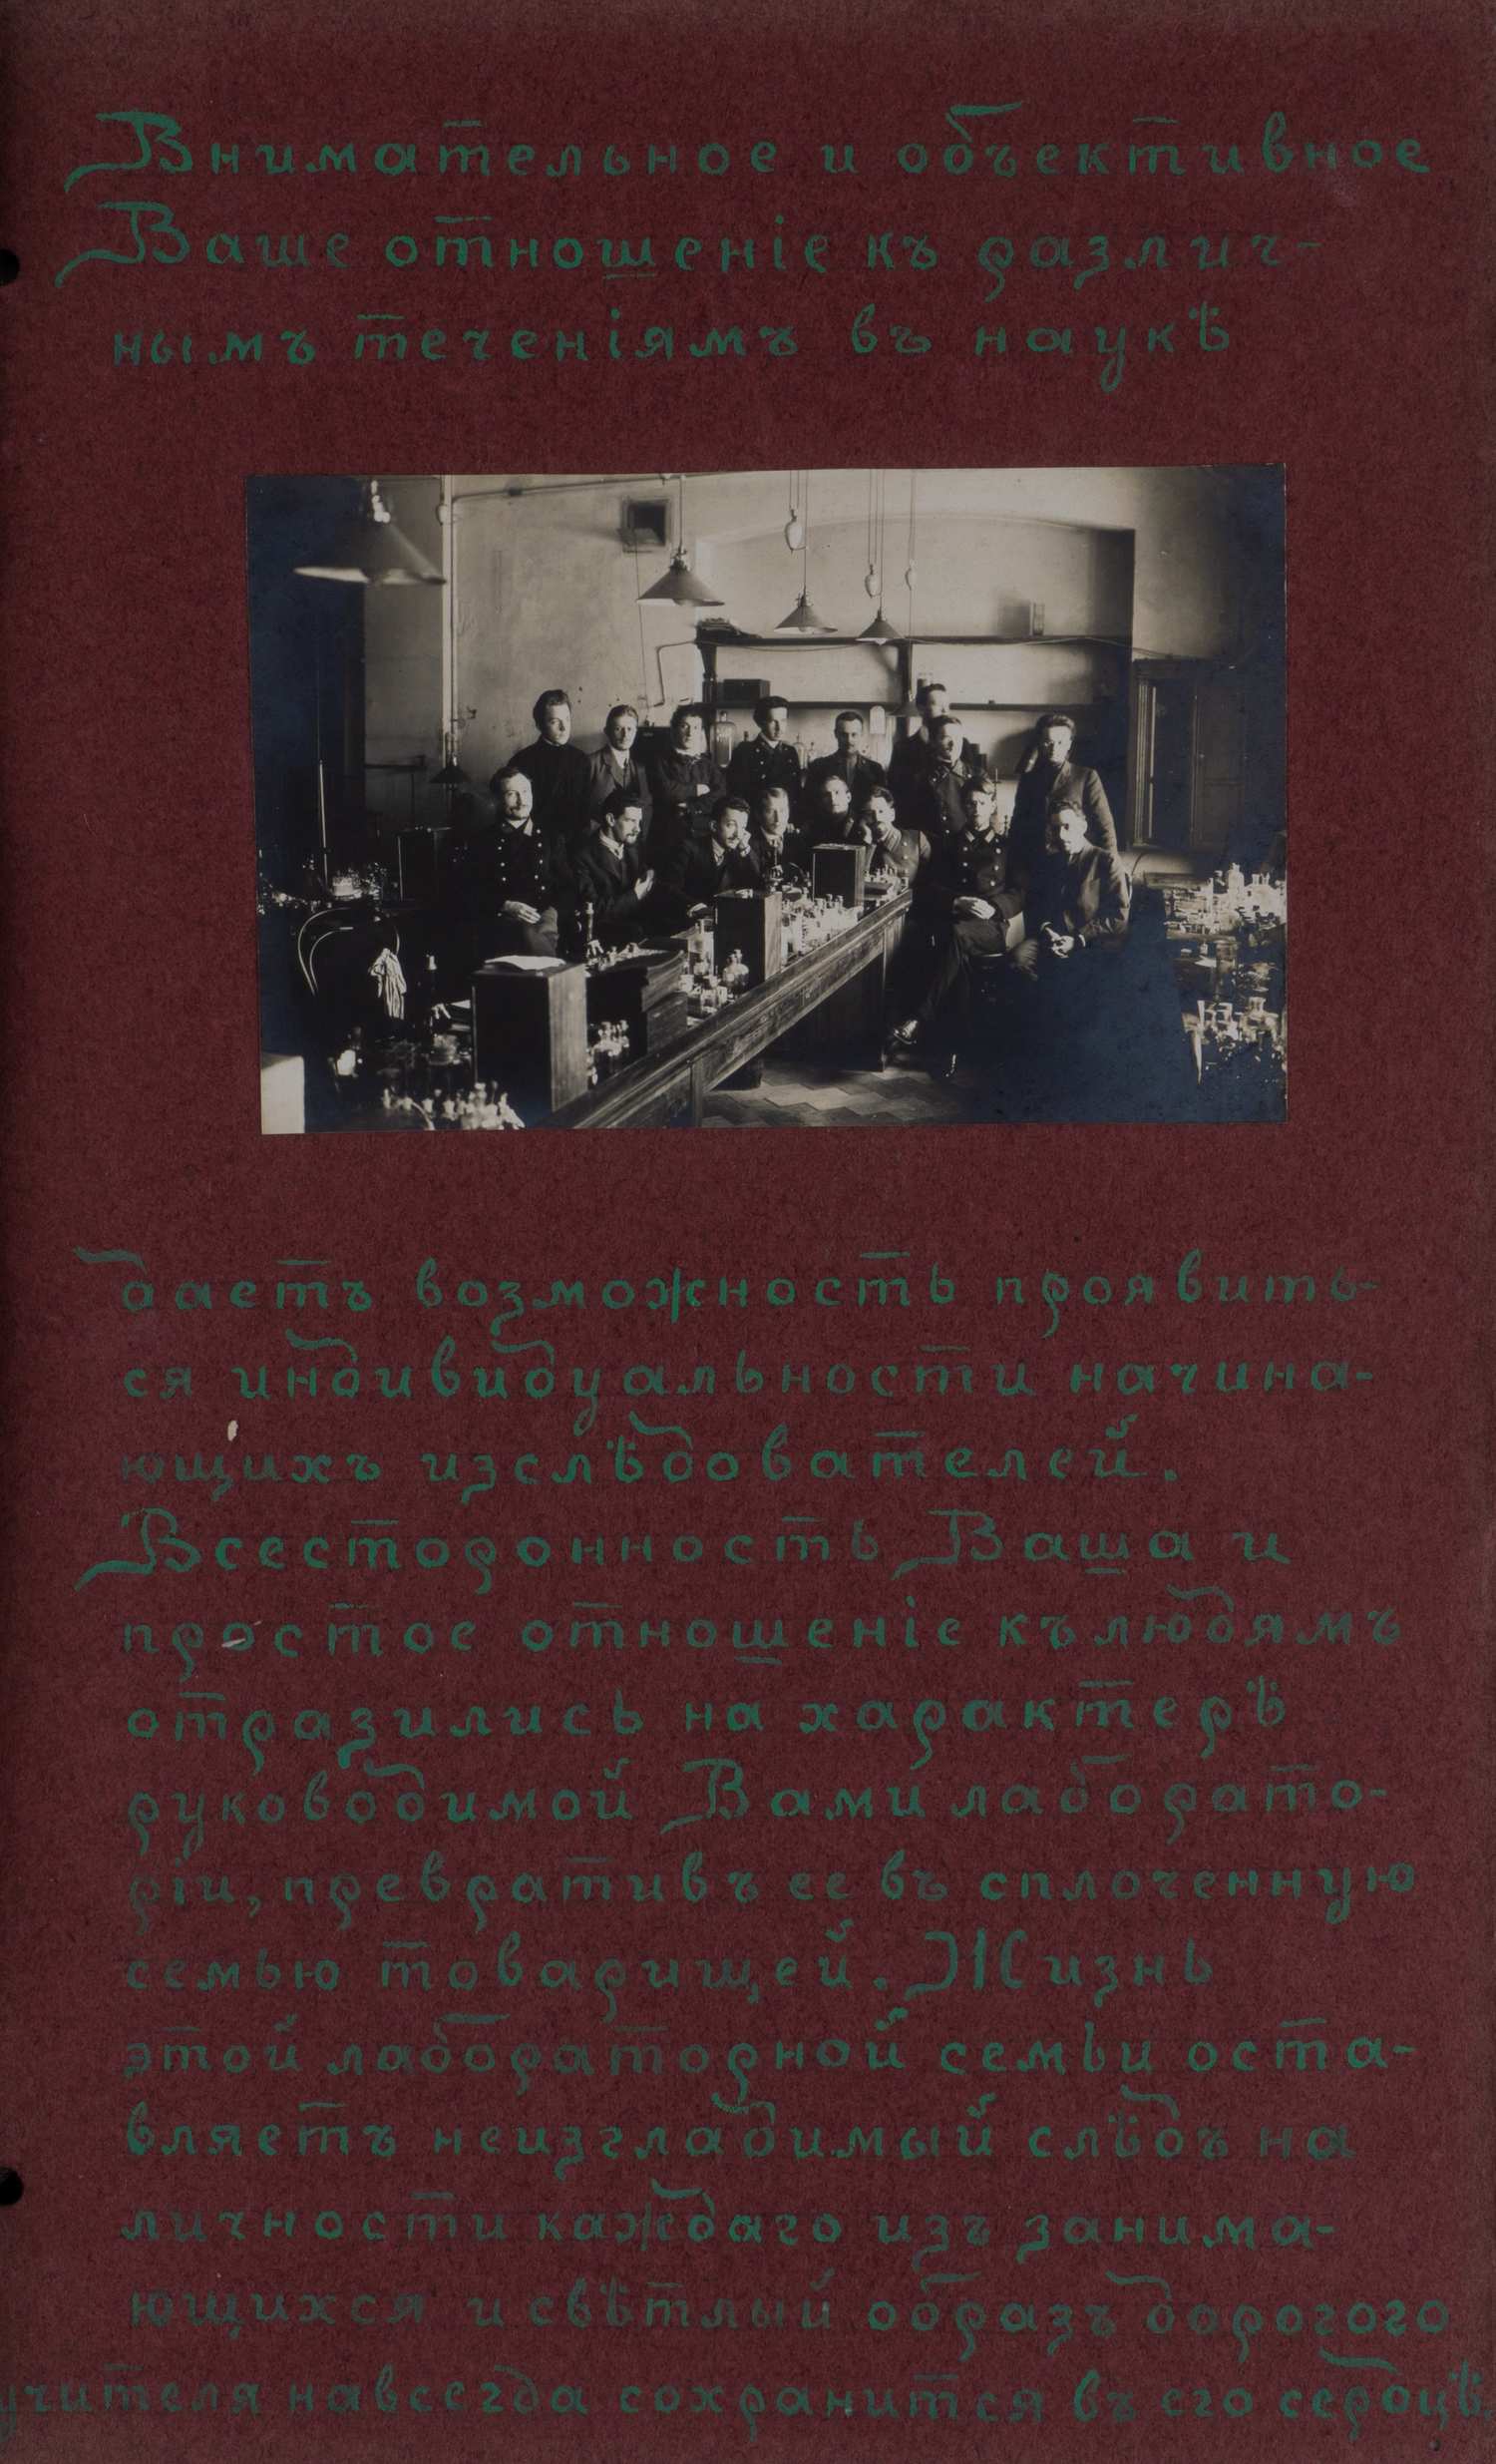 Оформленный фотографиями подносной адрес выдающемуся русскому зоологу Николаю Юрьевичу Зографу от студентов его лаборатории от 9 декабря 1909 года.